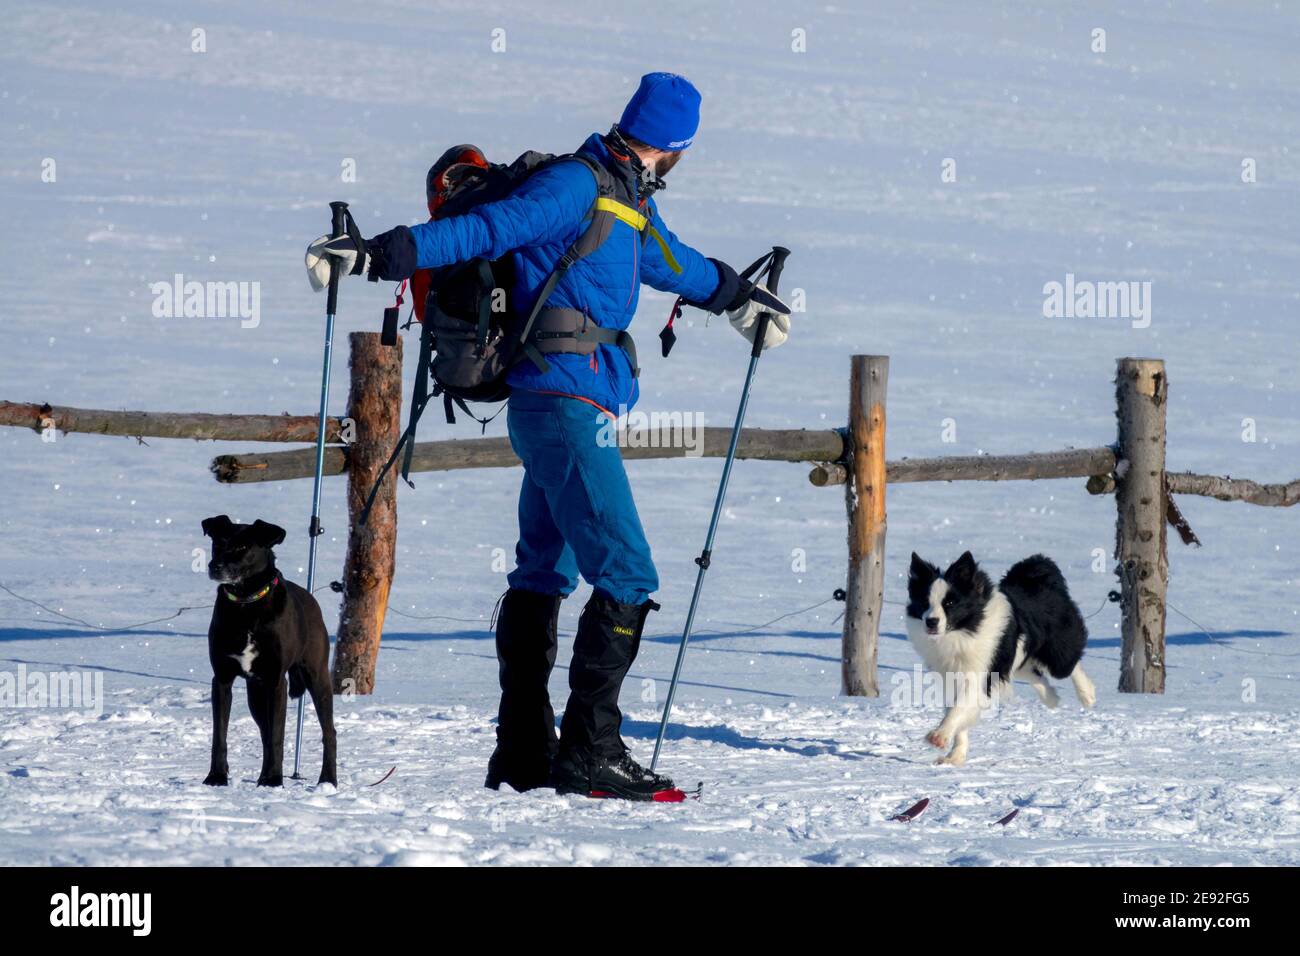 Hombre esquí de fondo con dos perros en la nieve Foto de stock